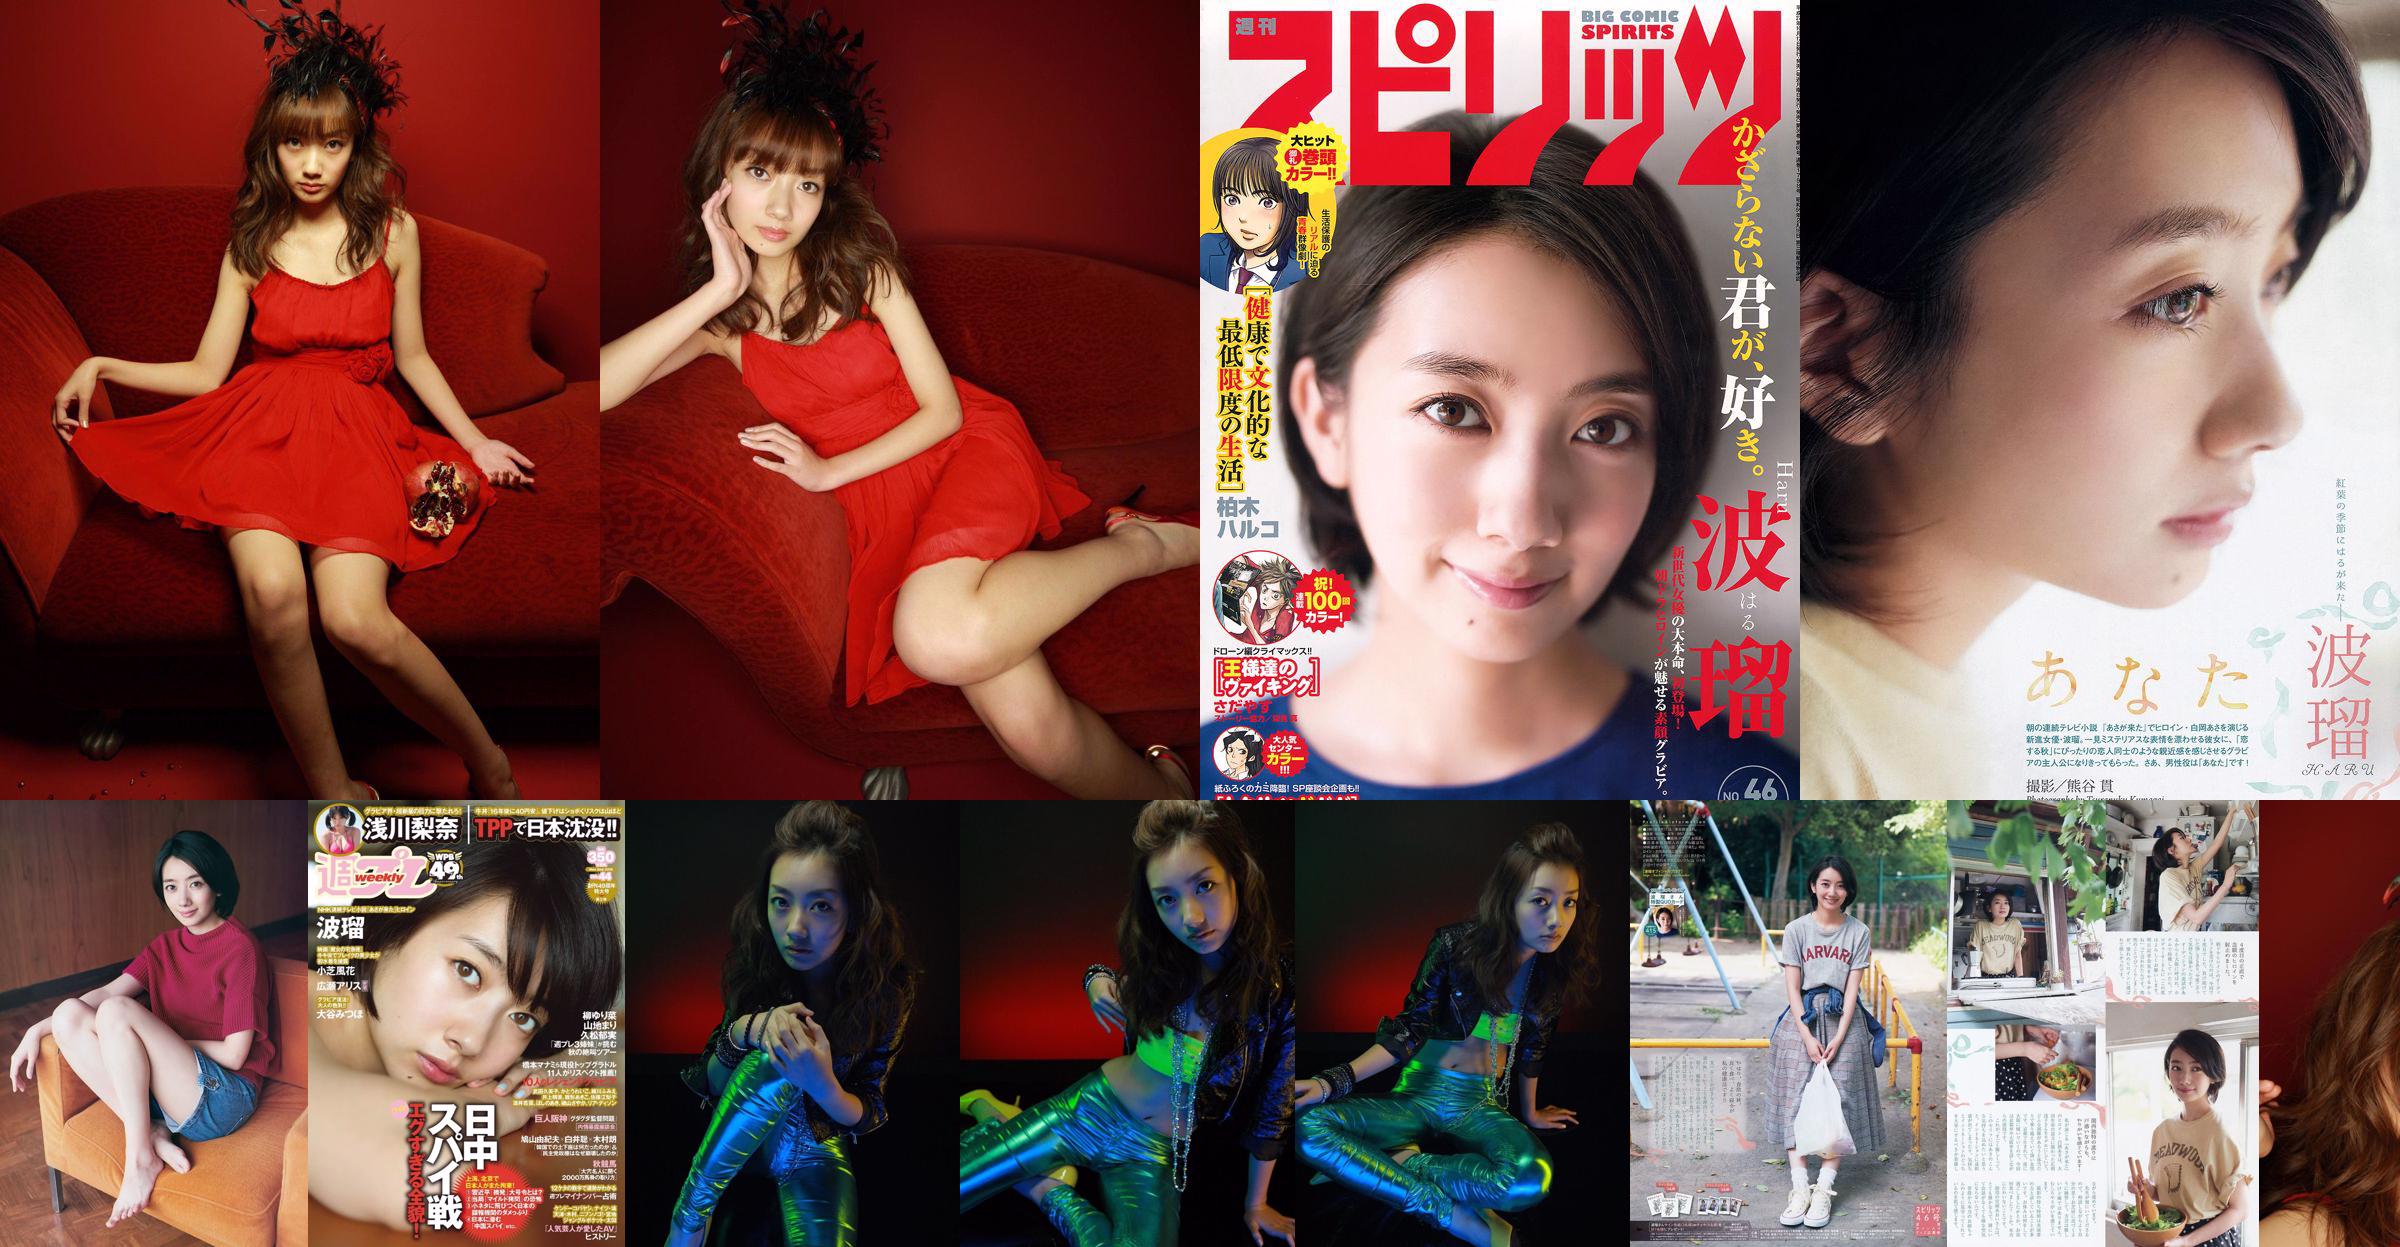 【ウィークリービッグコミックスピリッツ】Boru2015 No.46 Photo Magazine No.3f5832 ページ2